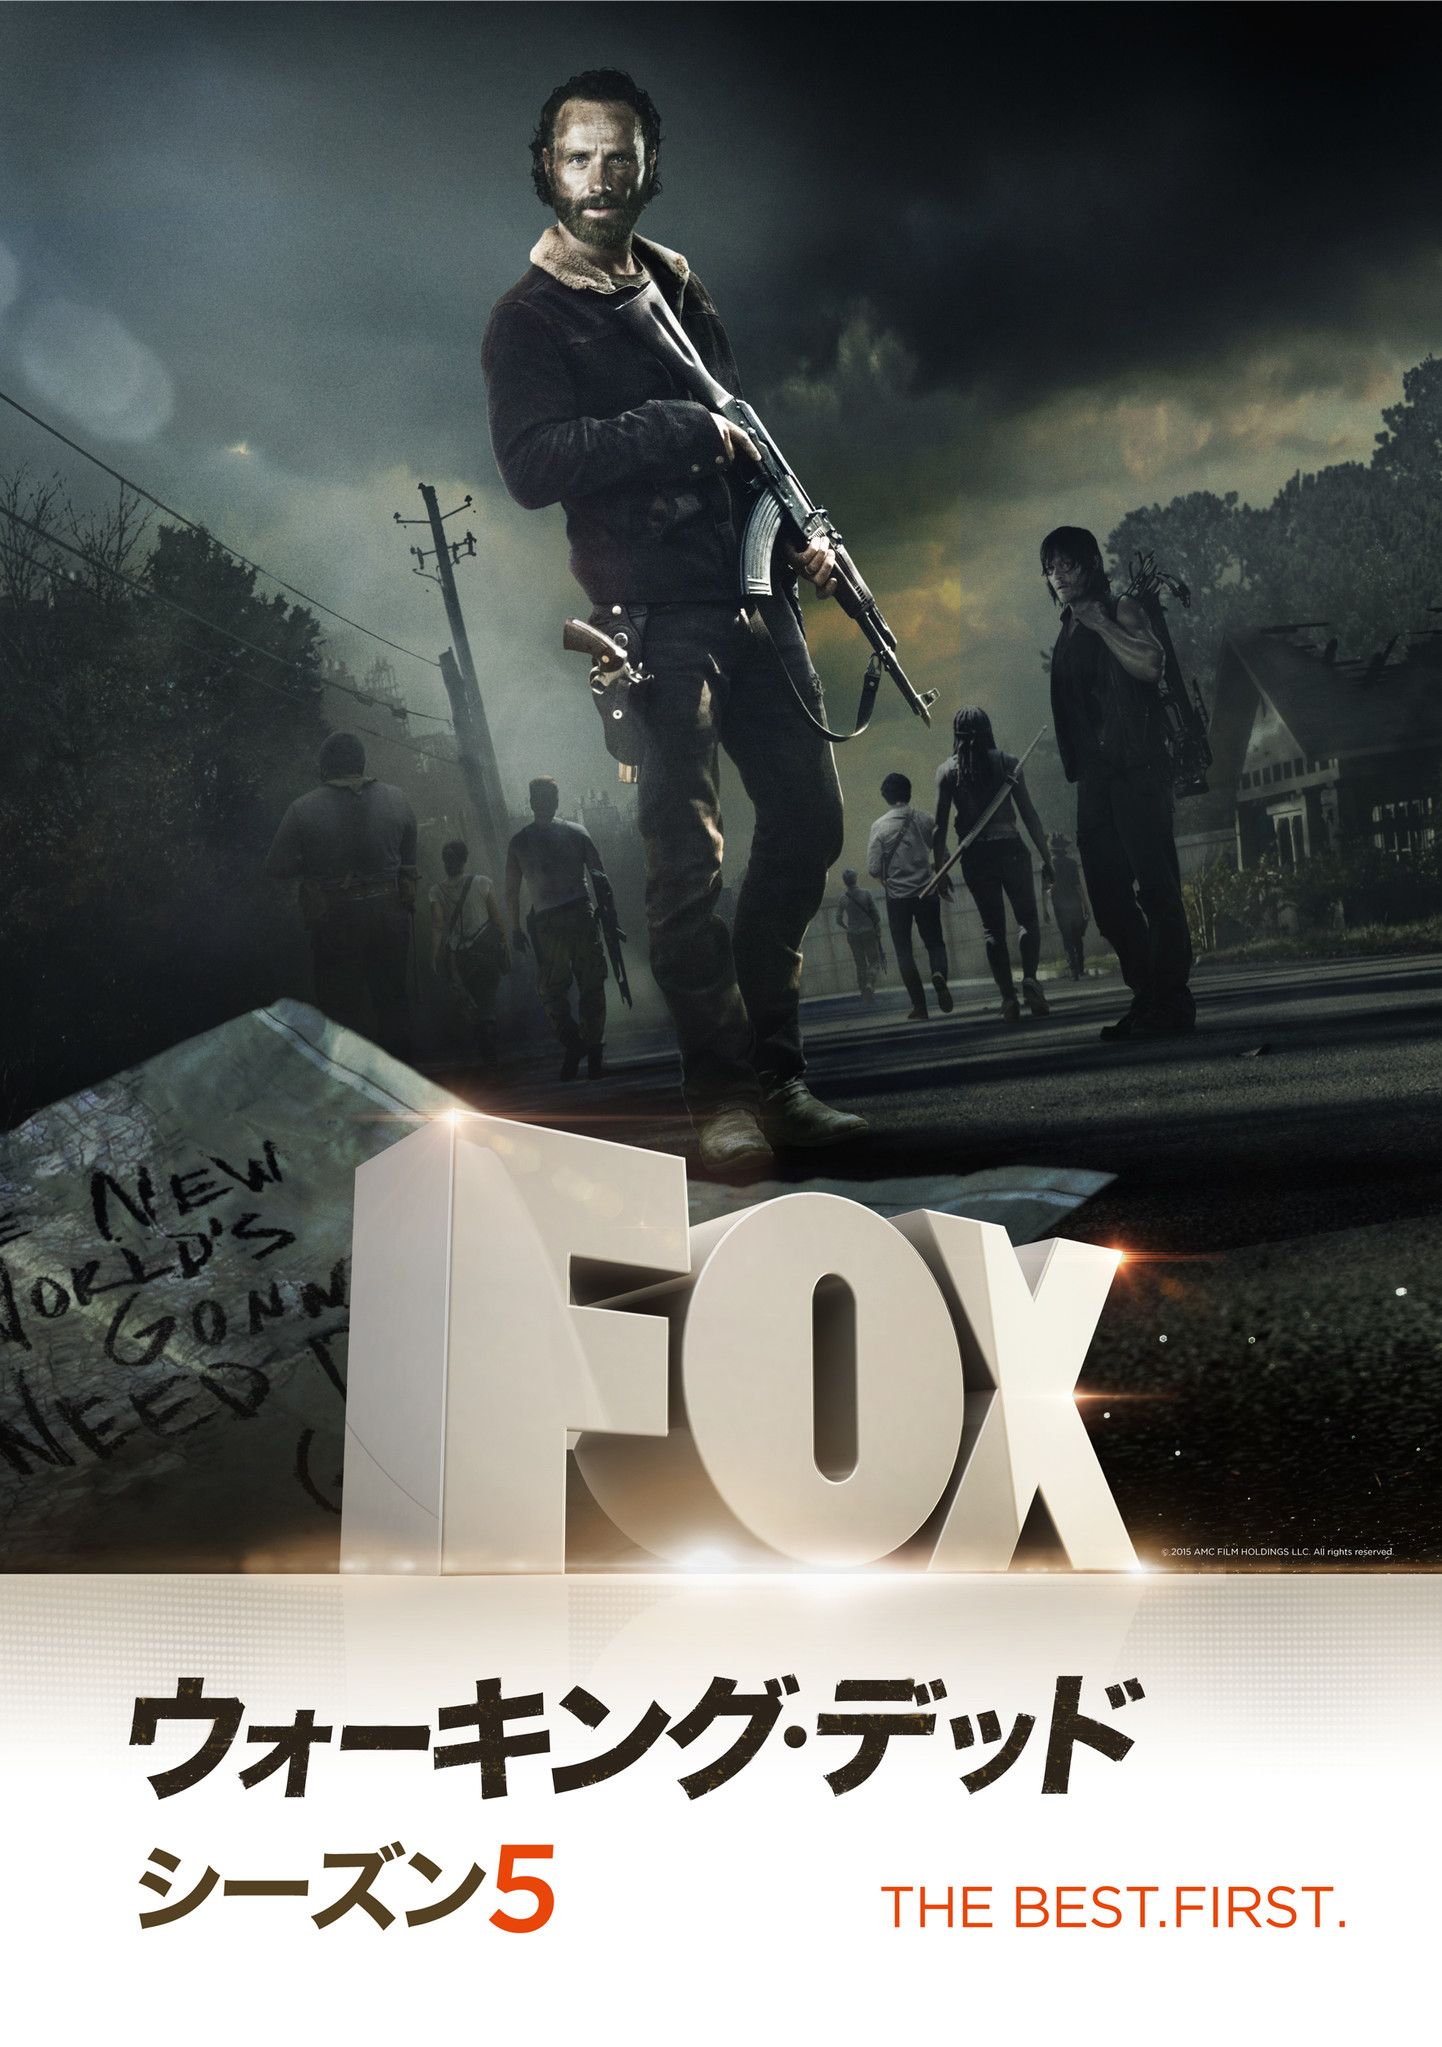 世界同時放送 日本最速 全米ケーブルtv史上最高視聴率のパニック サバイバル ドラマ ウォーキング デッド シーズン5後半foxで2月9日 月 よる9時日本初放送スタート Foxネットワークスのプレスリリース